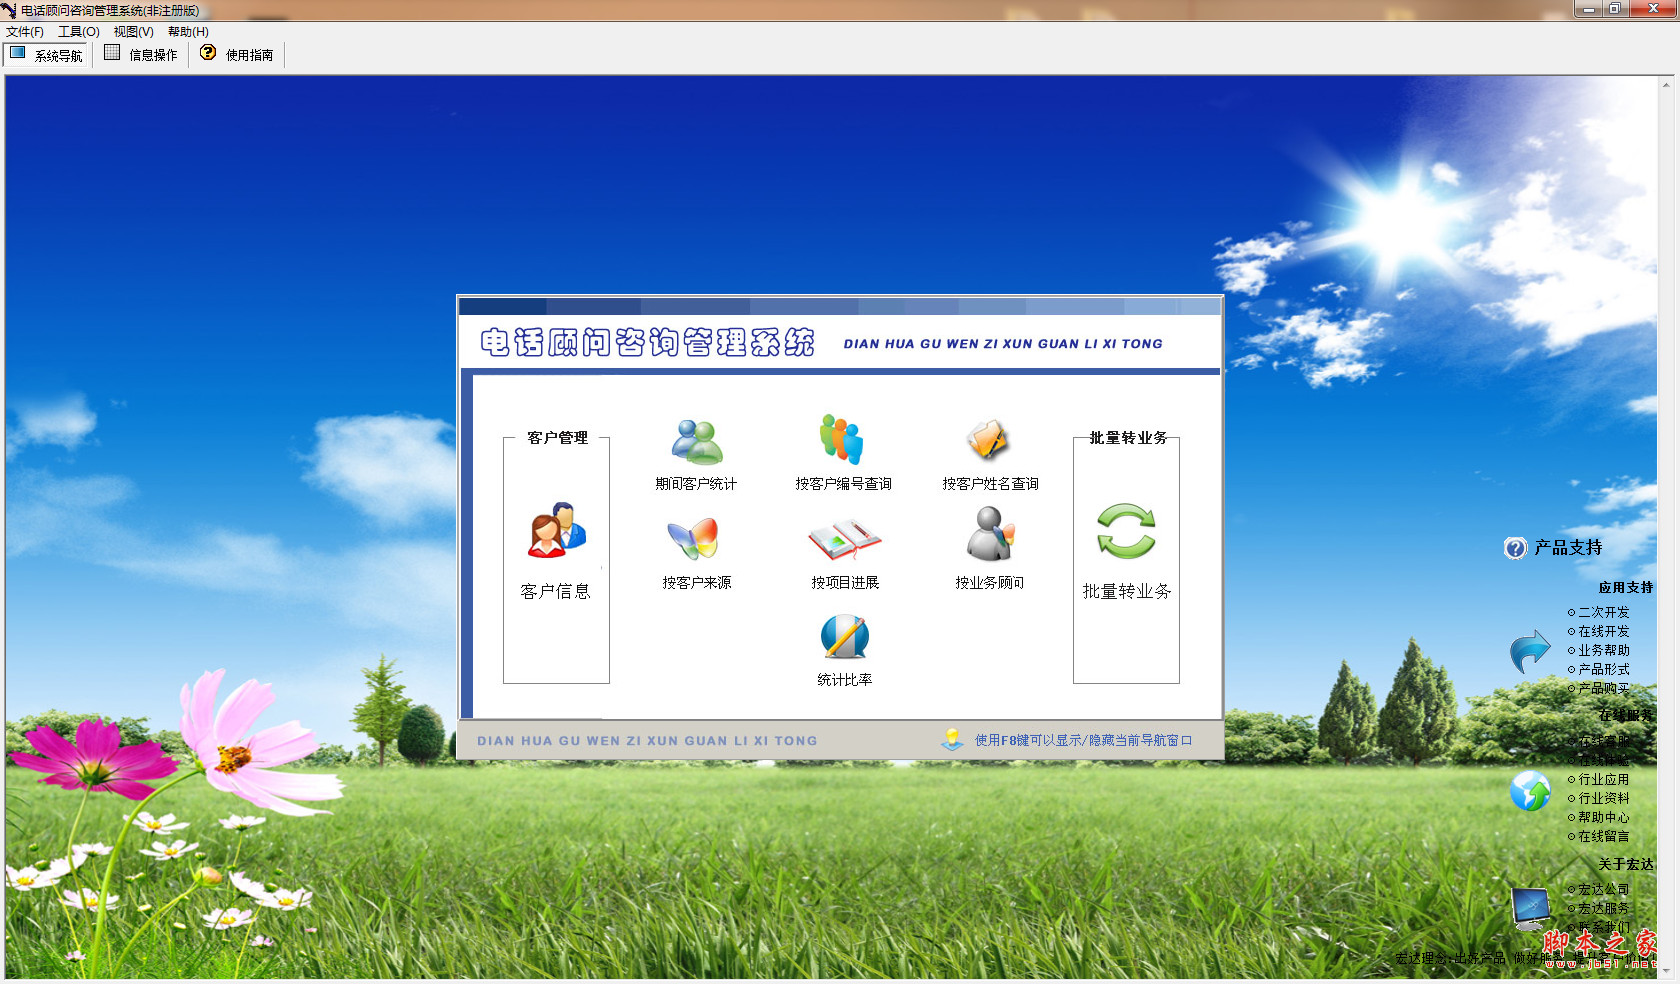 宏达电话顾问咨询管理系统 V1.0 中文免费安装版